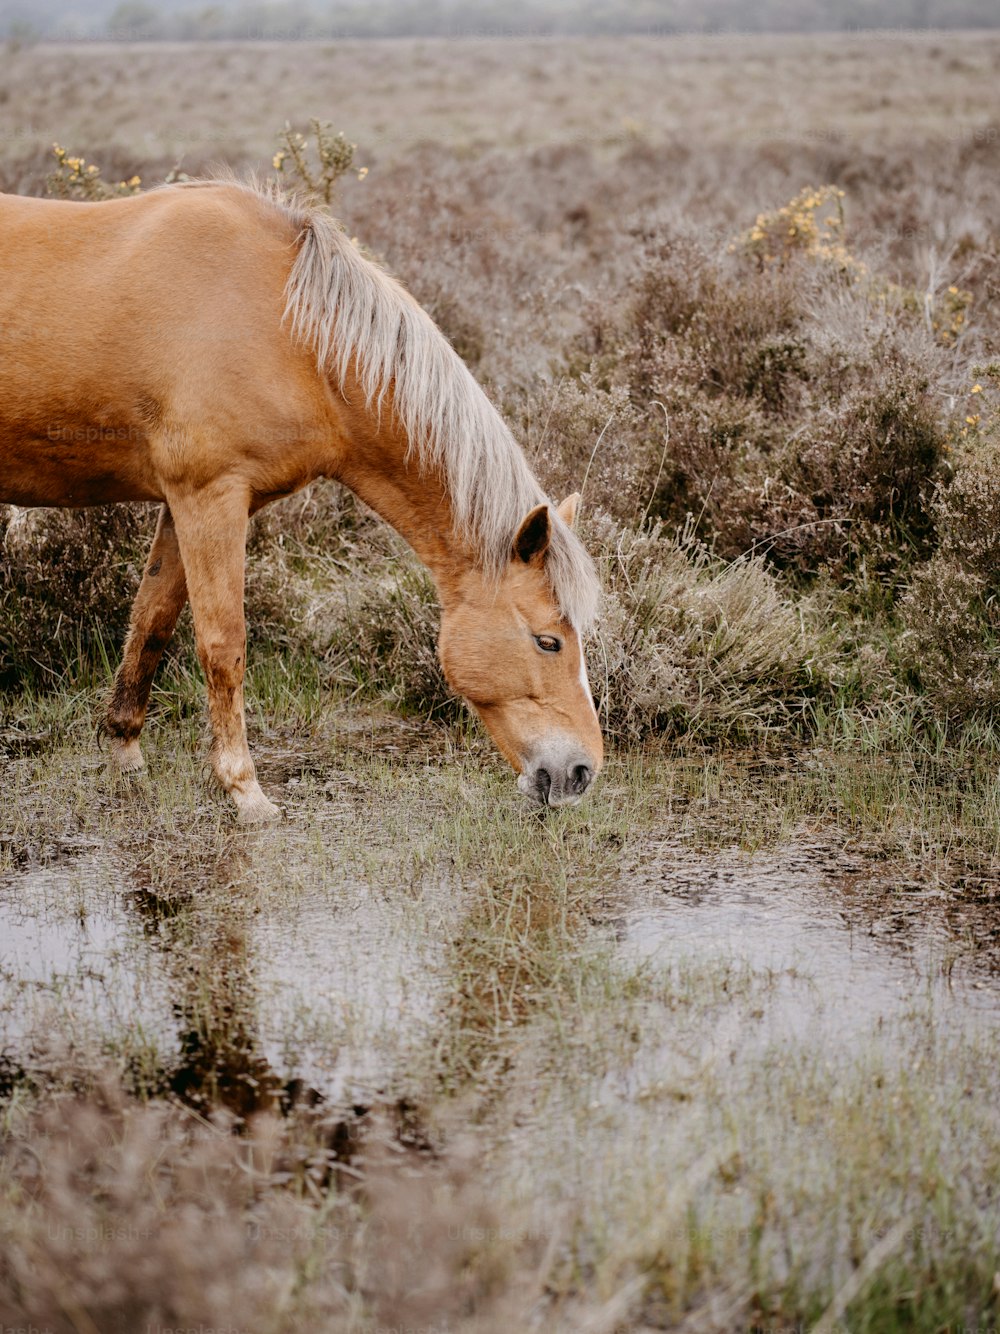 Un caballo marrón parado en un campo junto a un charco de agua